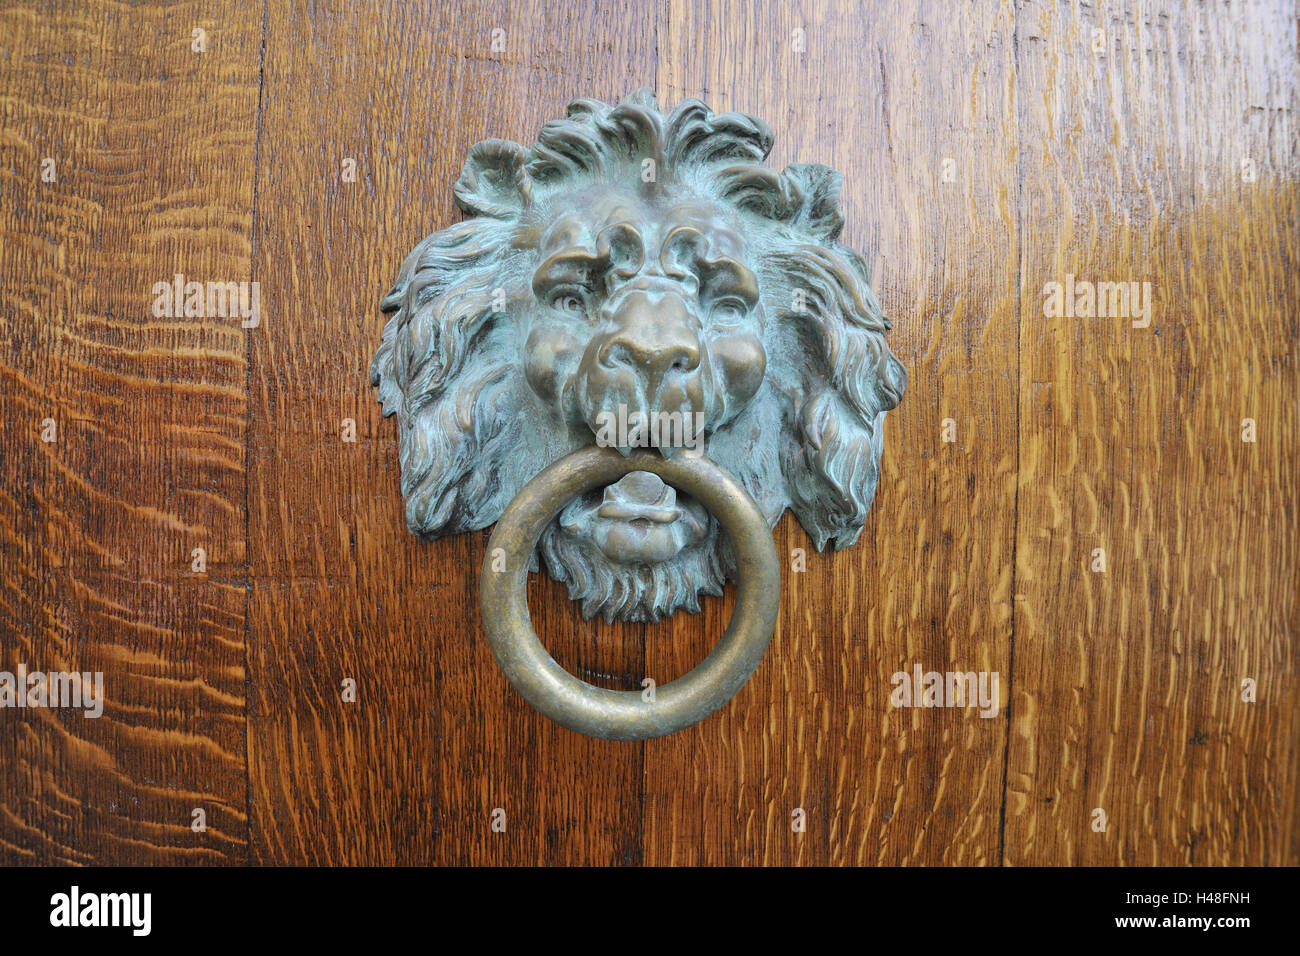 Door doorknocker, lion, close up, Stock Photo